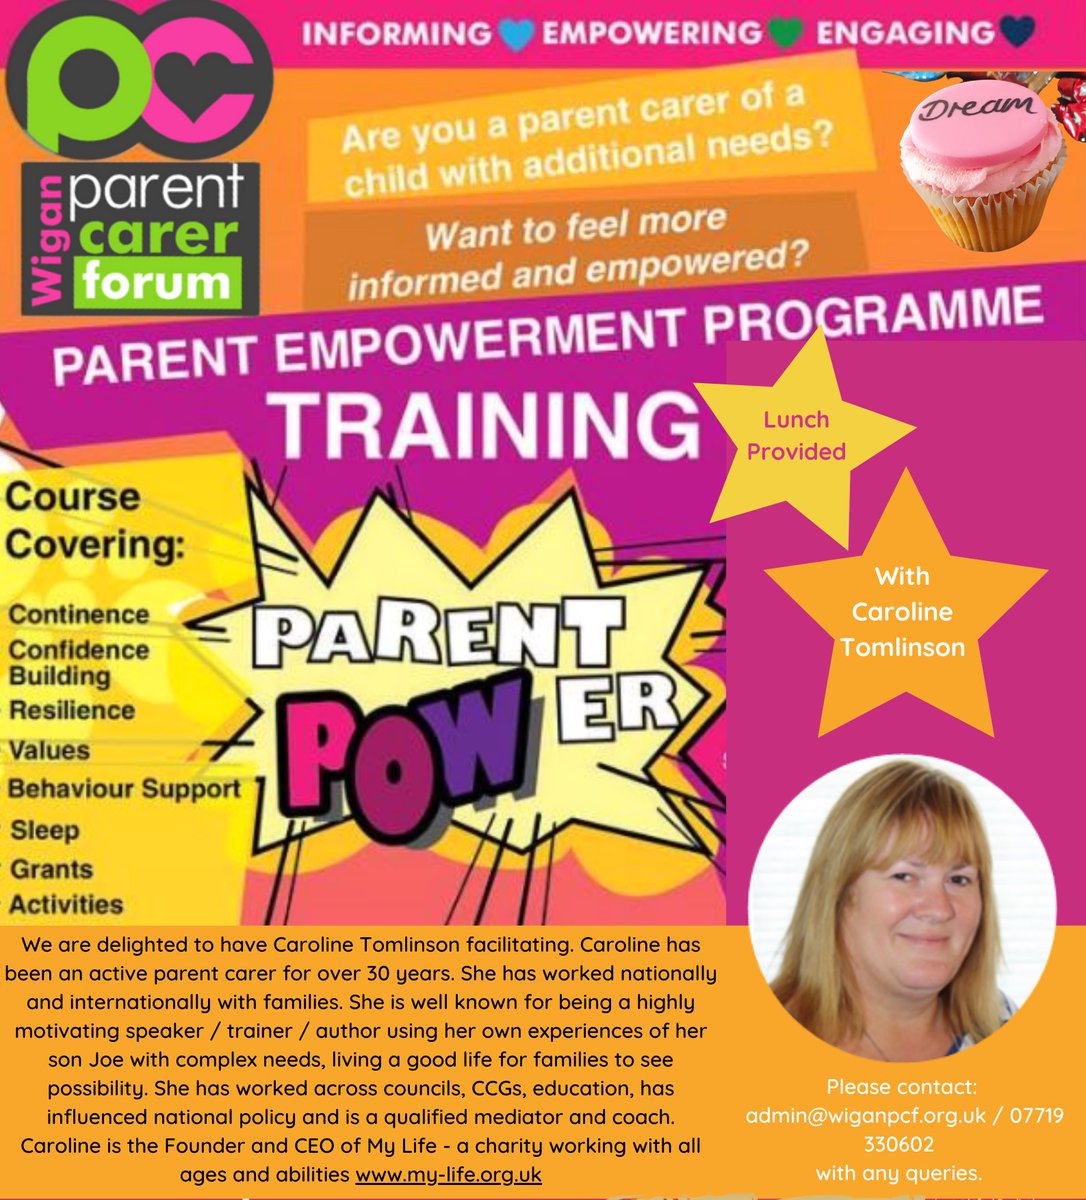 Parent Empowerment Course Please follow eventbrite link for full details eventbrite.co.uk/e/wigan-parent…